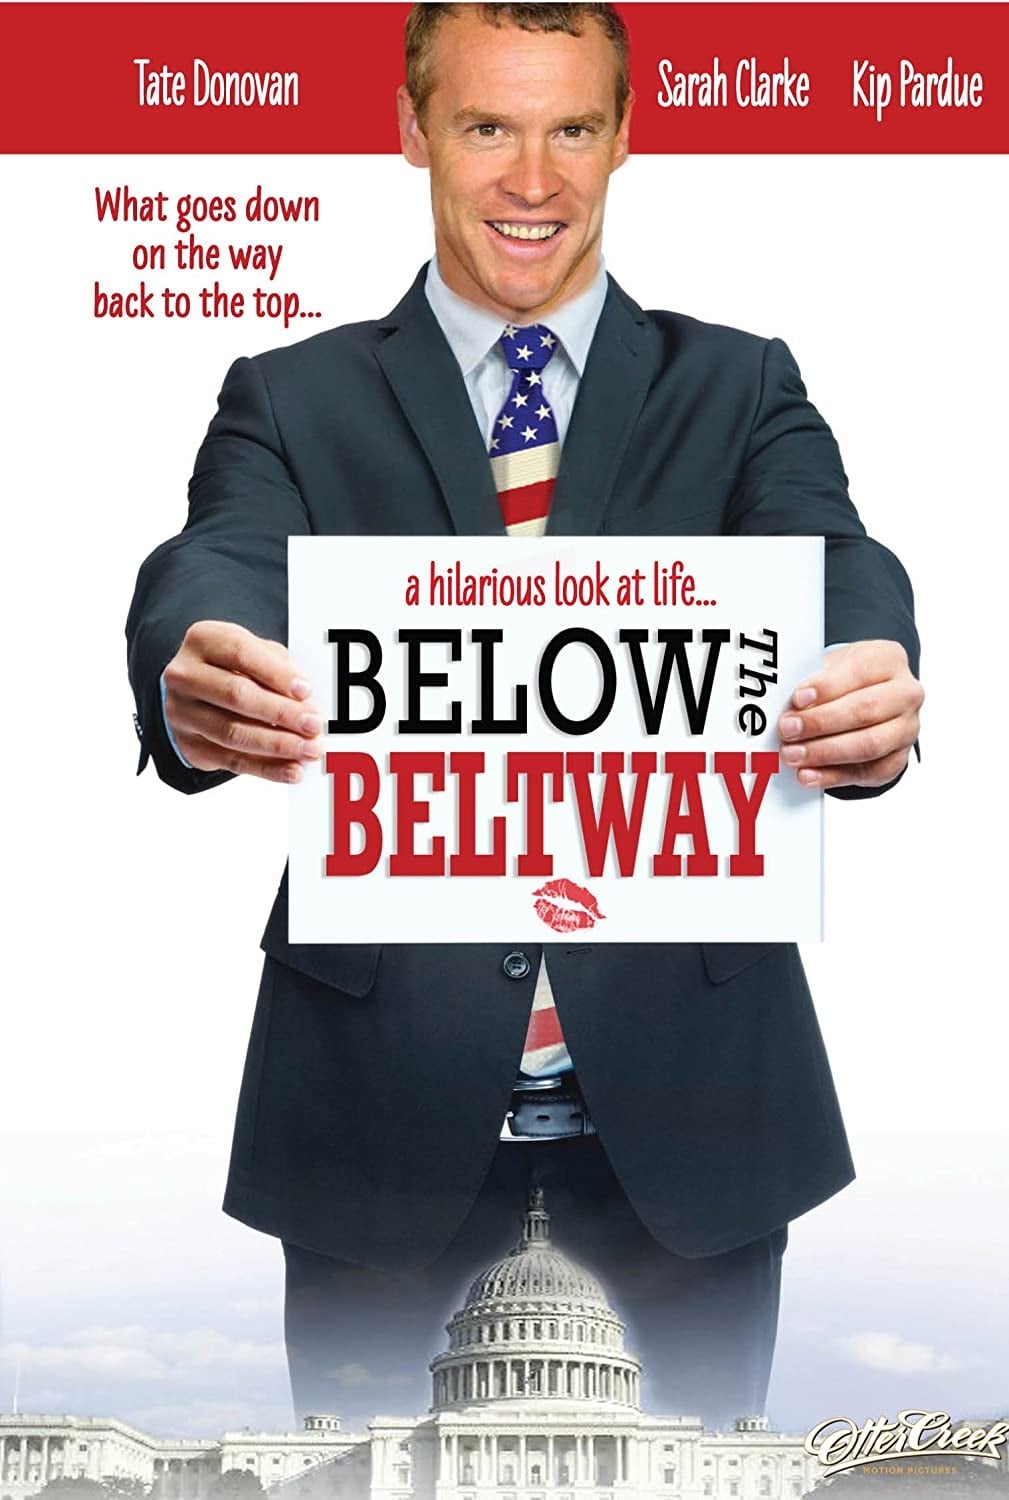 Below the Beltway (2010)